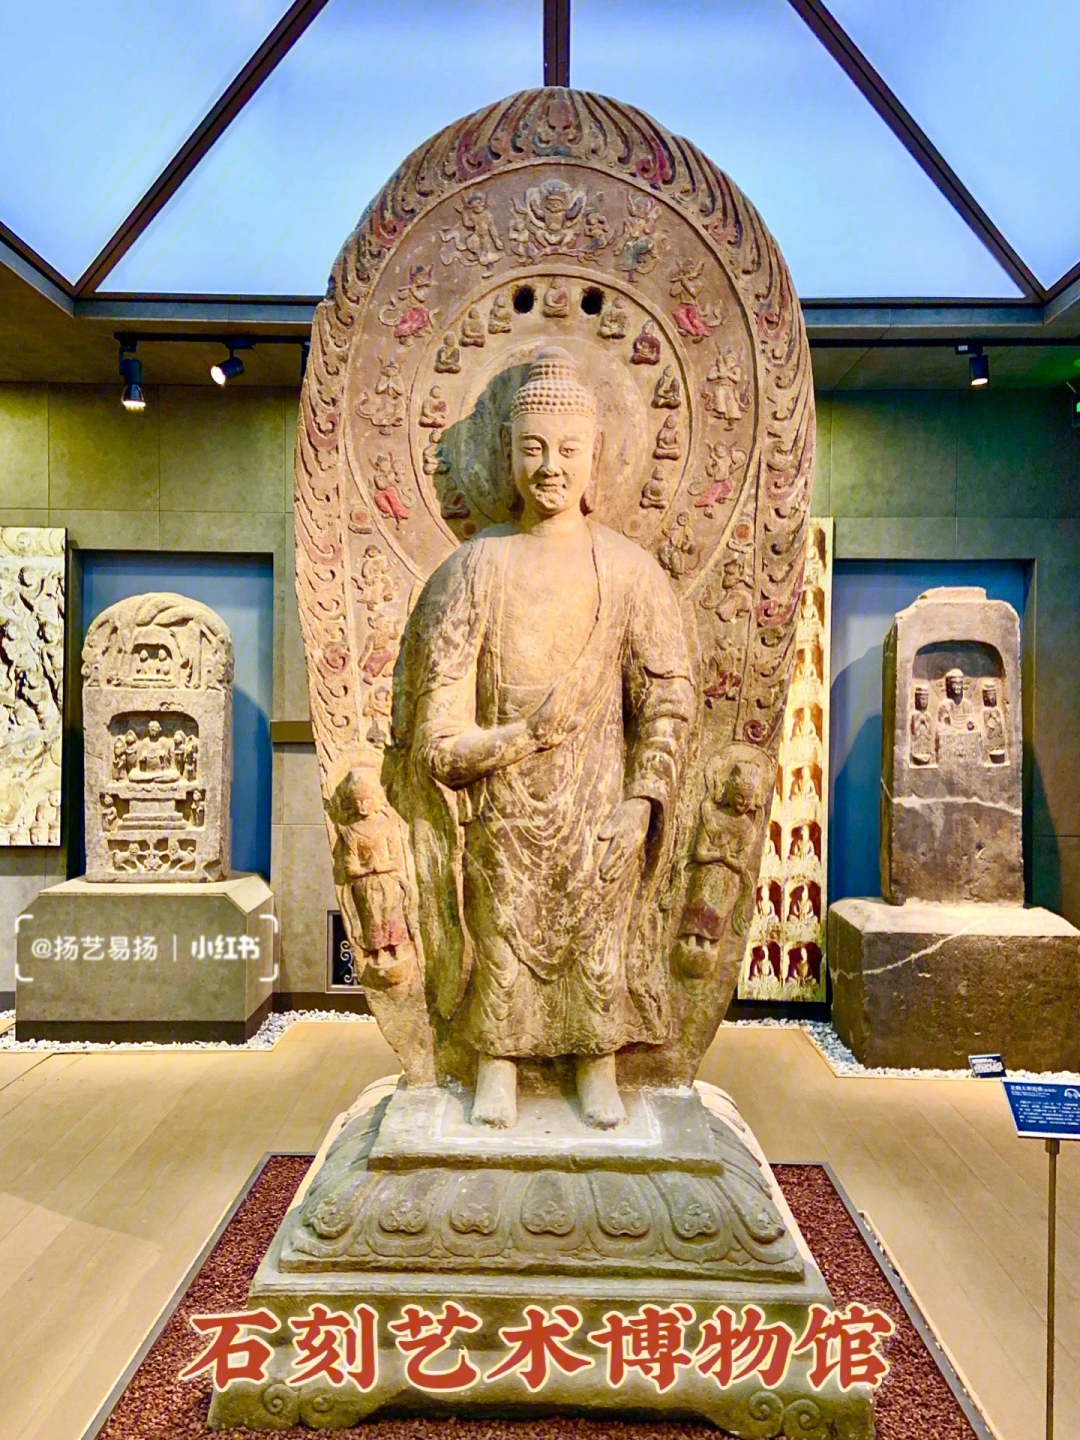 会说话的石头北京石刻艺术博物馆